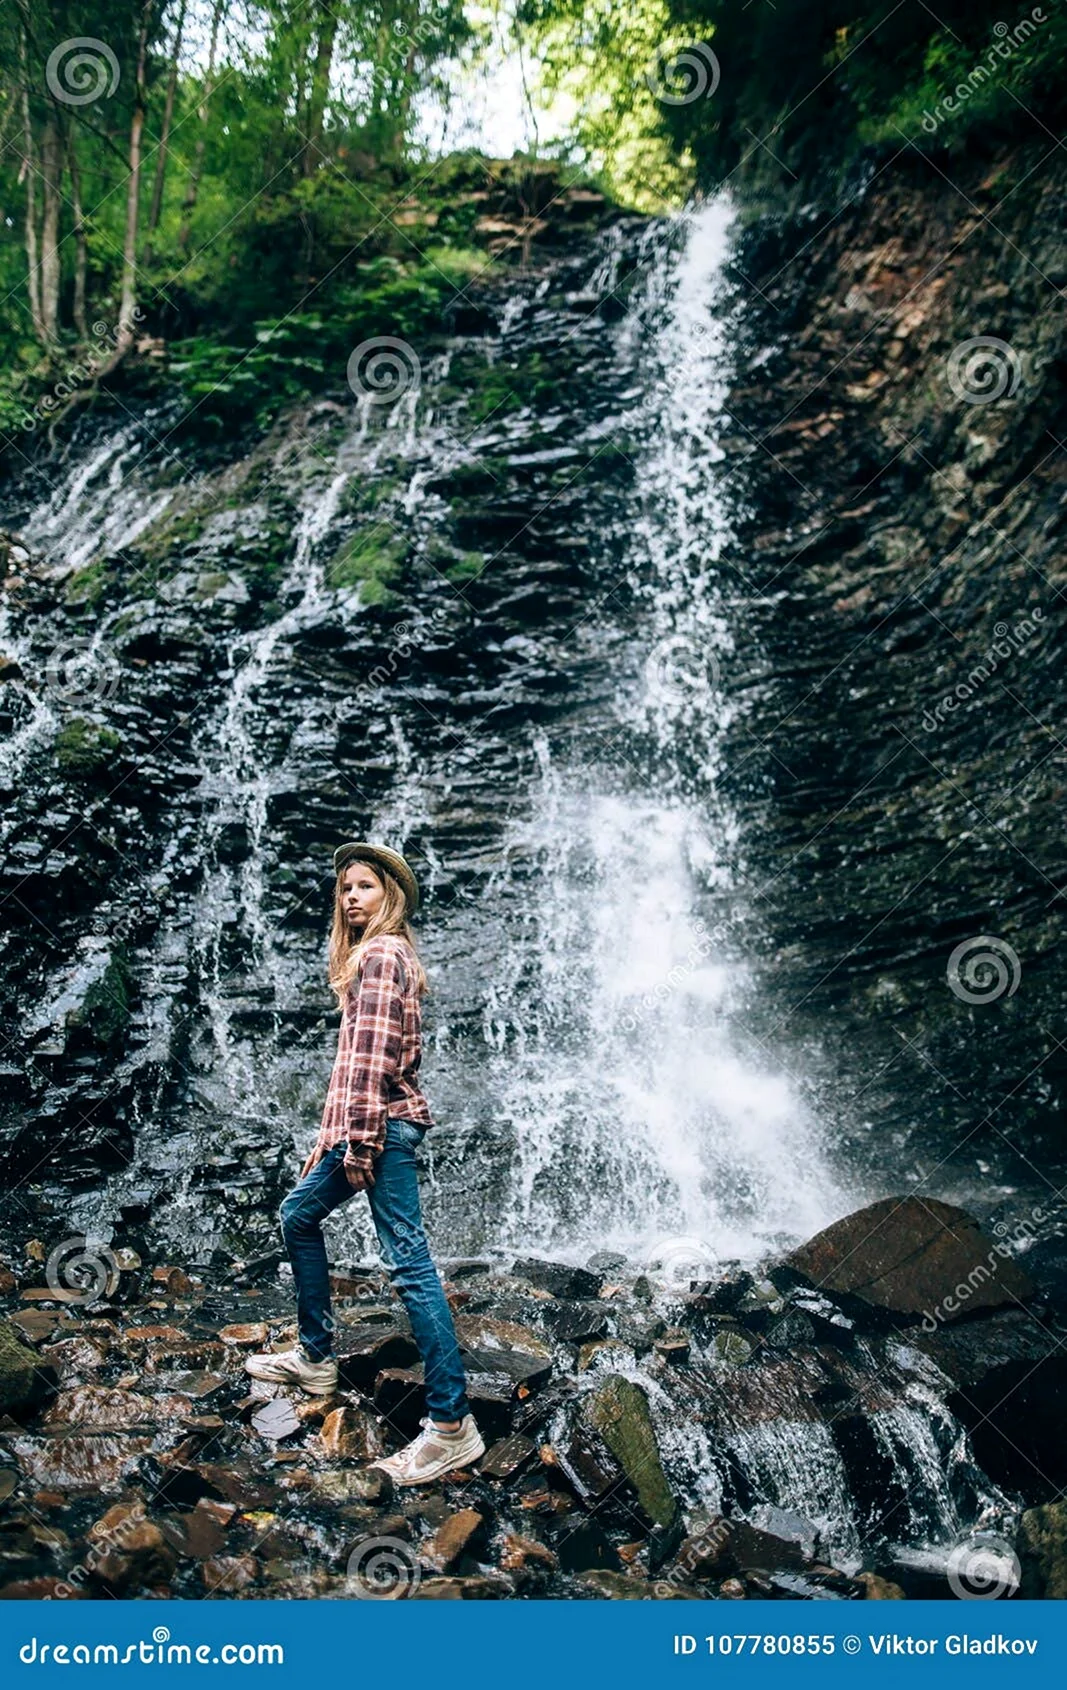 Фотосессия у водопада в одежде